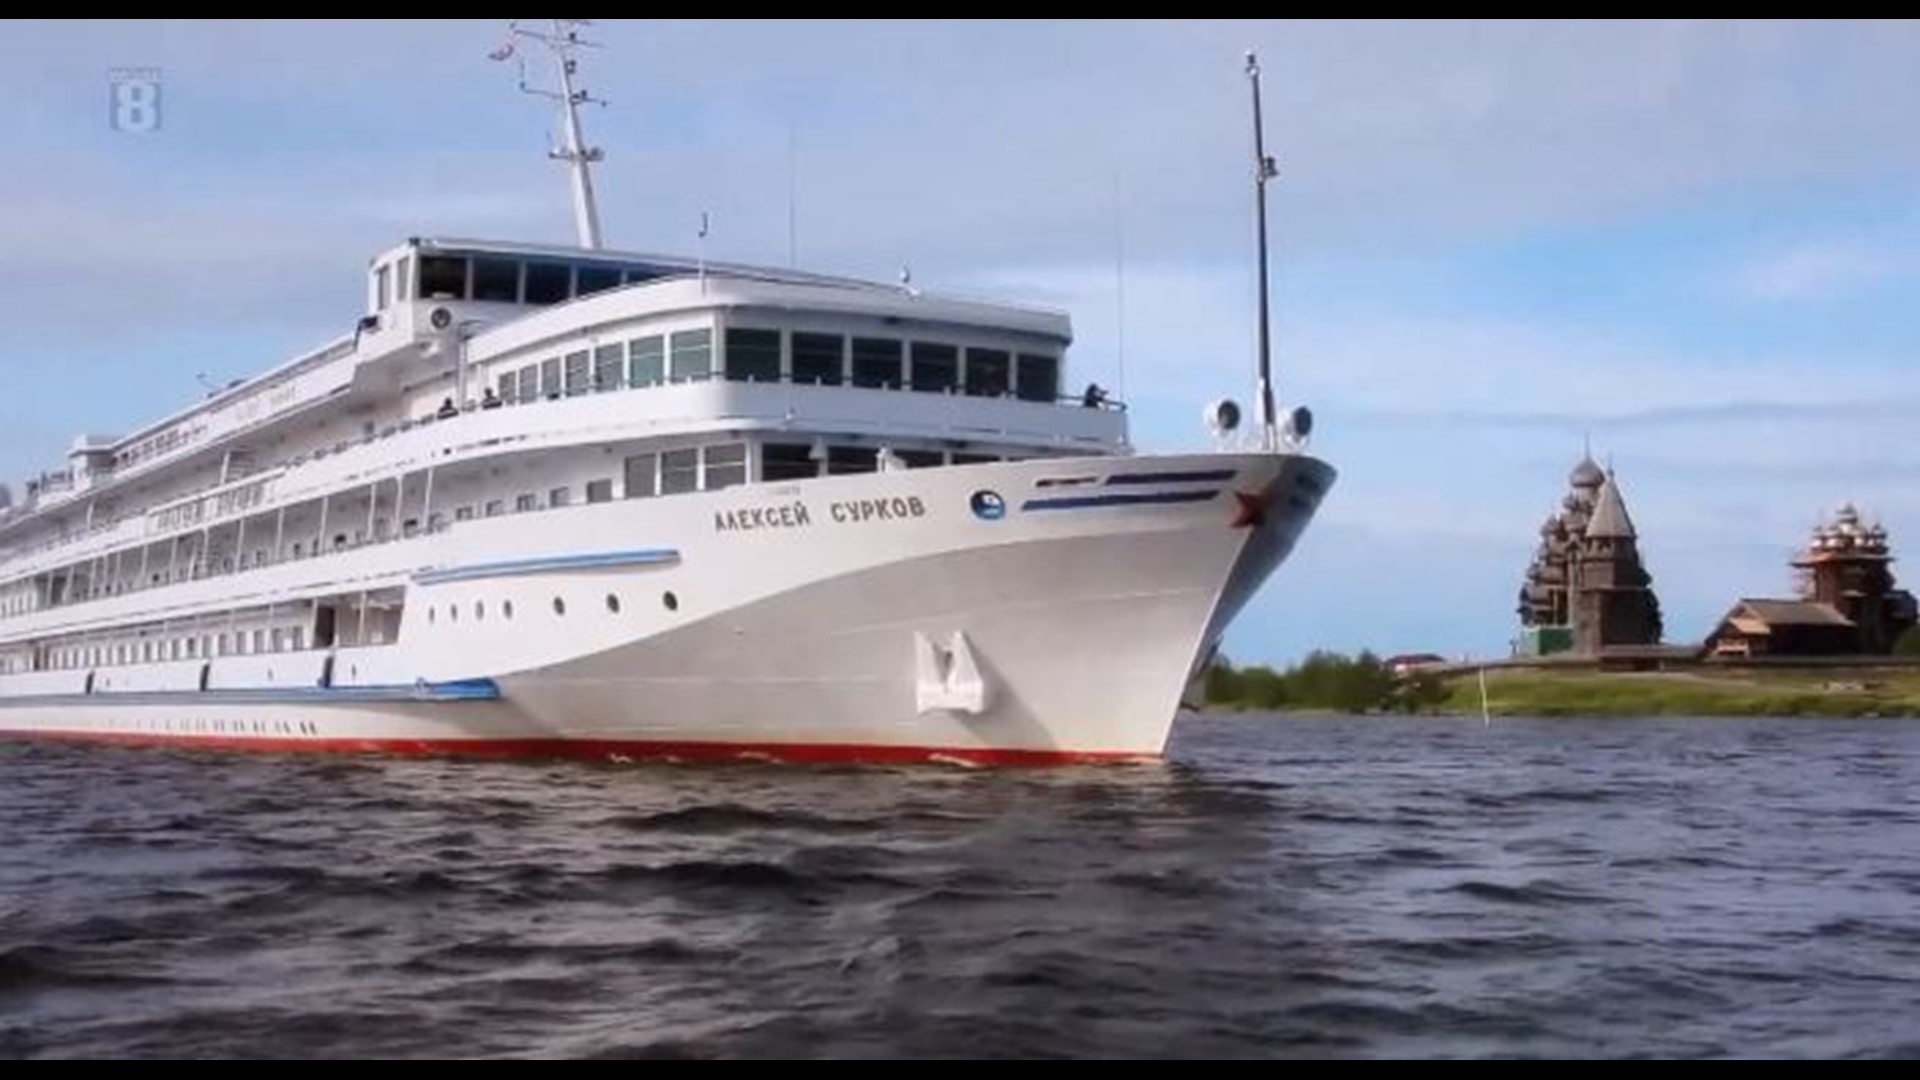 viking cruise ship in davenport iowa